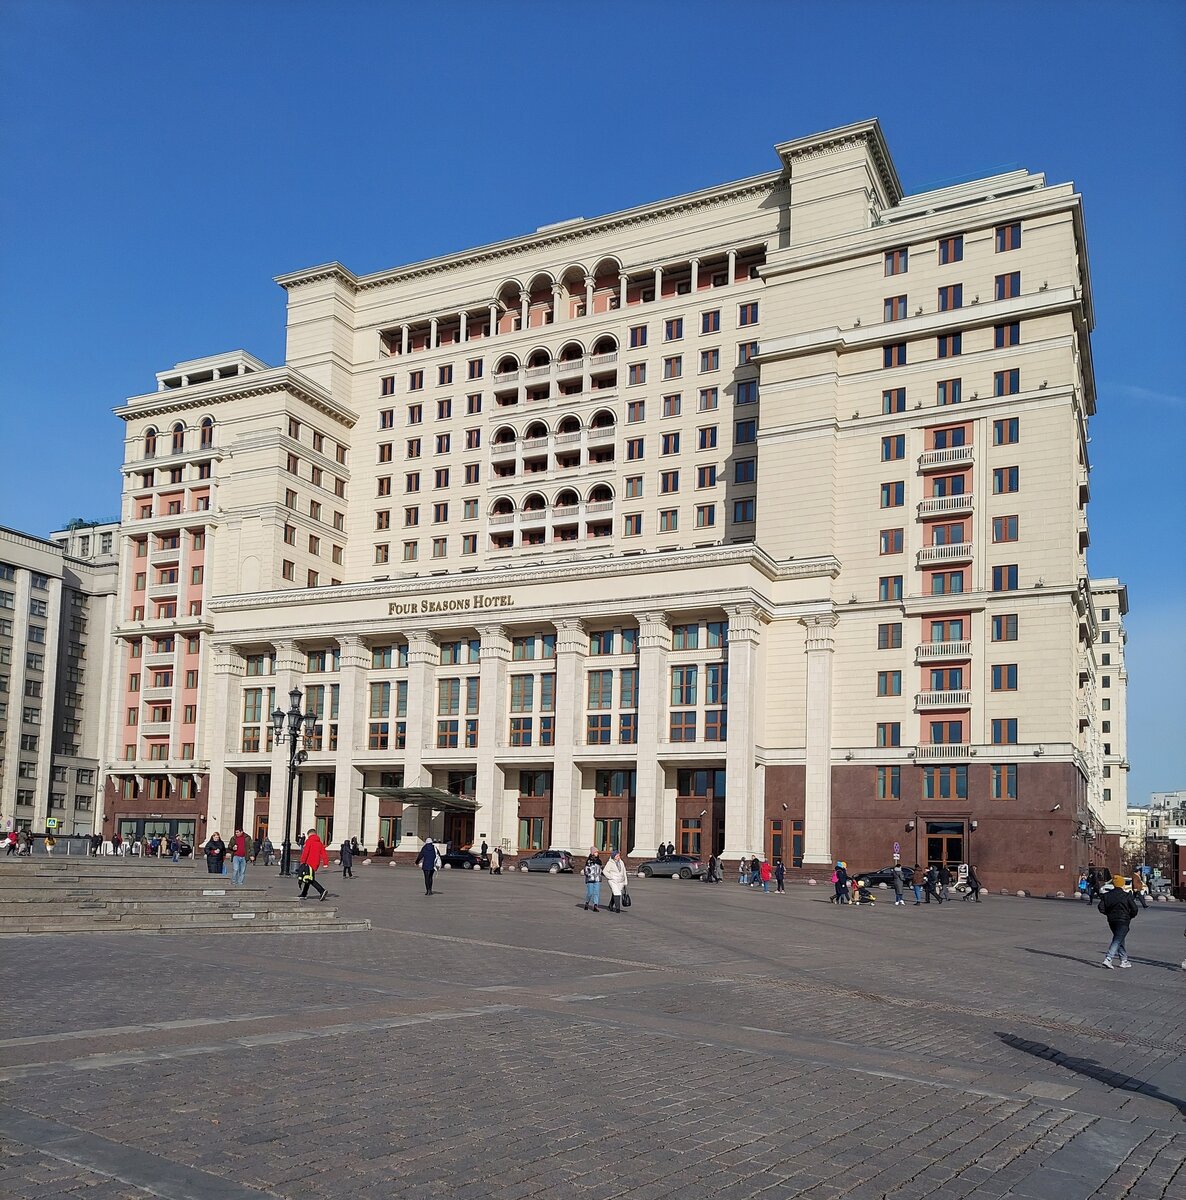 Почему гостиница в России была снесена: причины и следствия